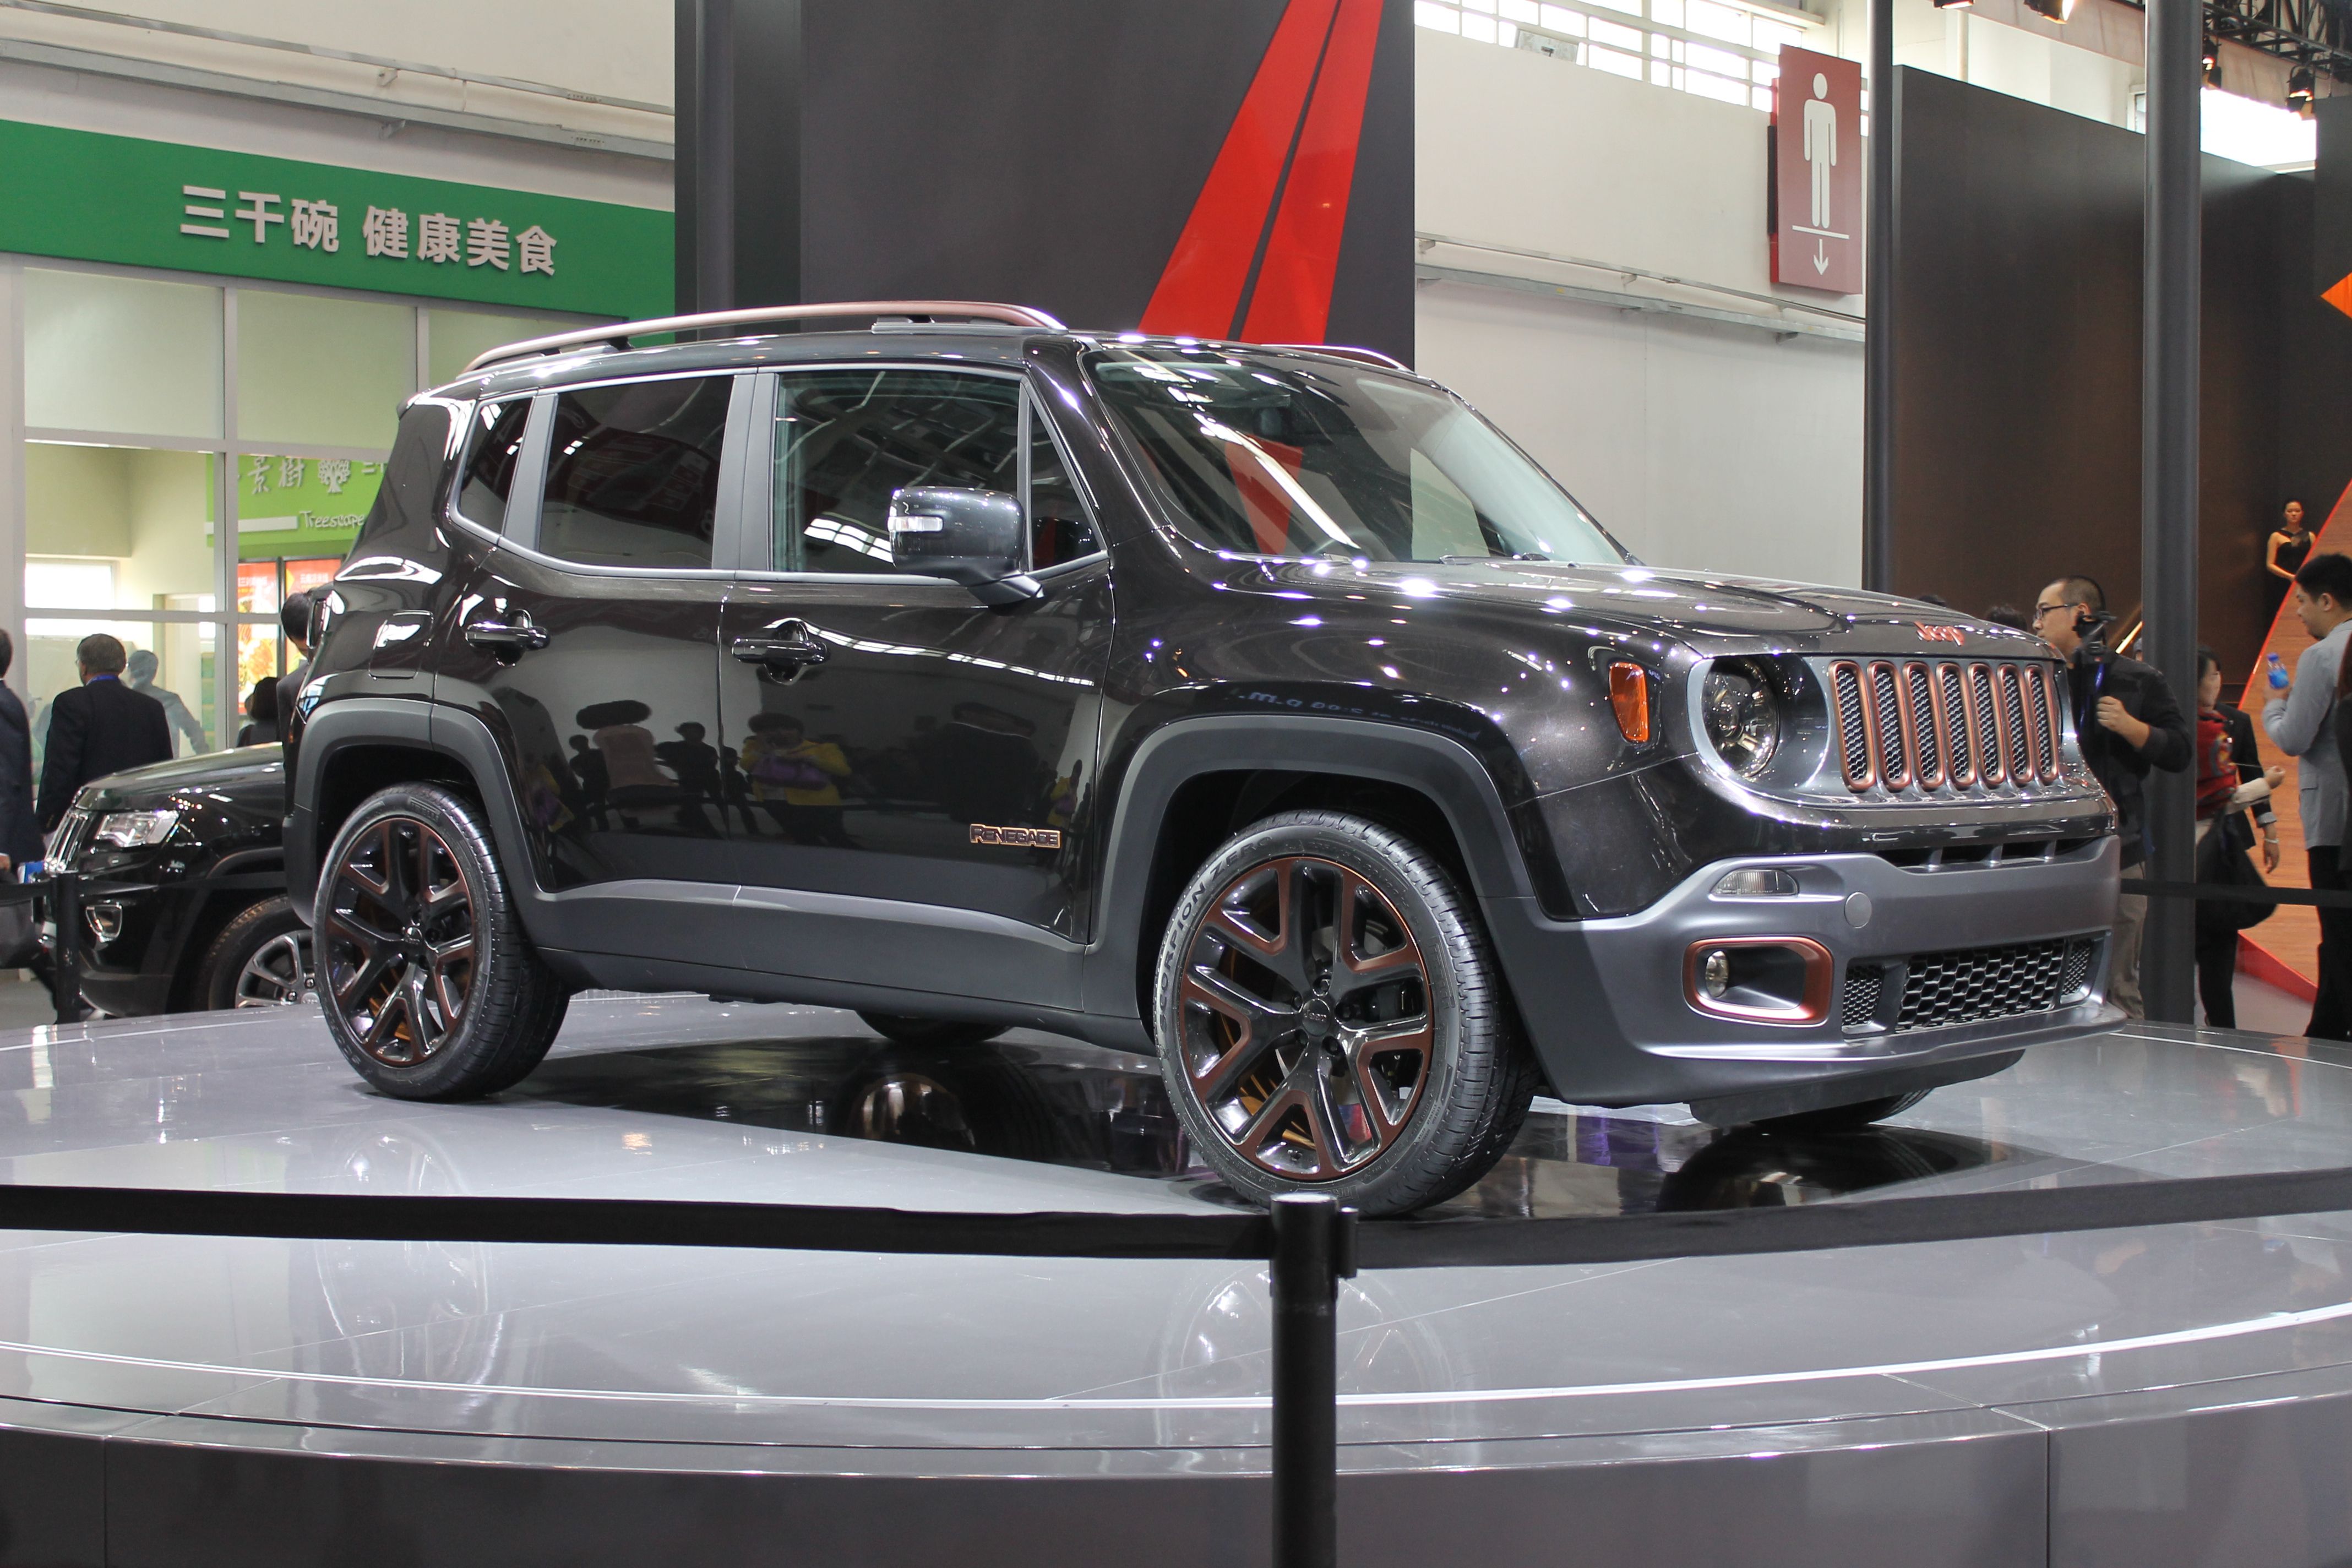 2014 Jeep Renegade Zi You Xia Concept